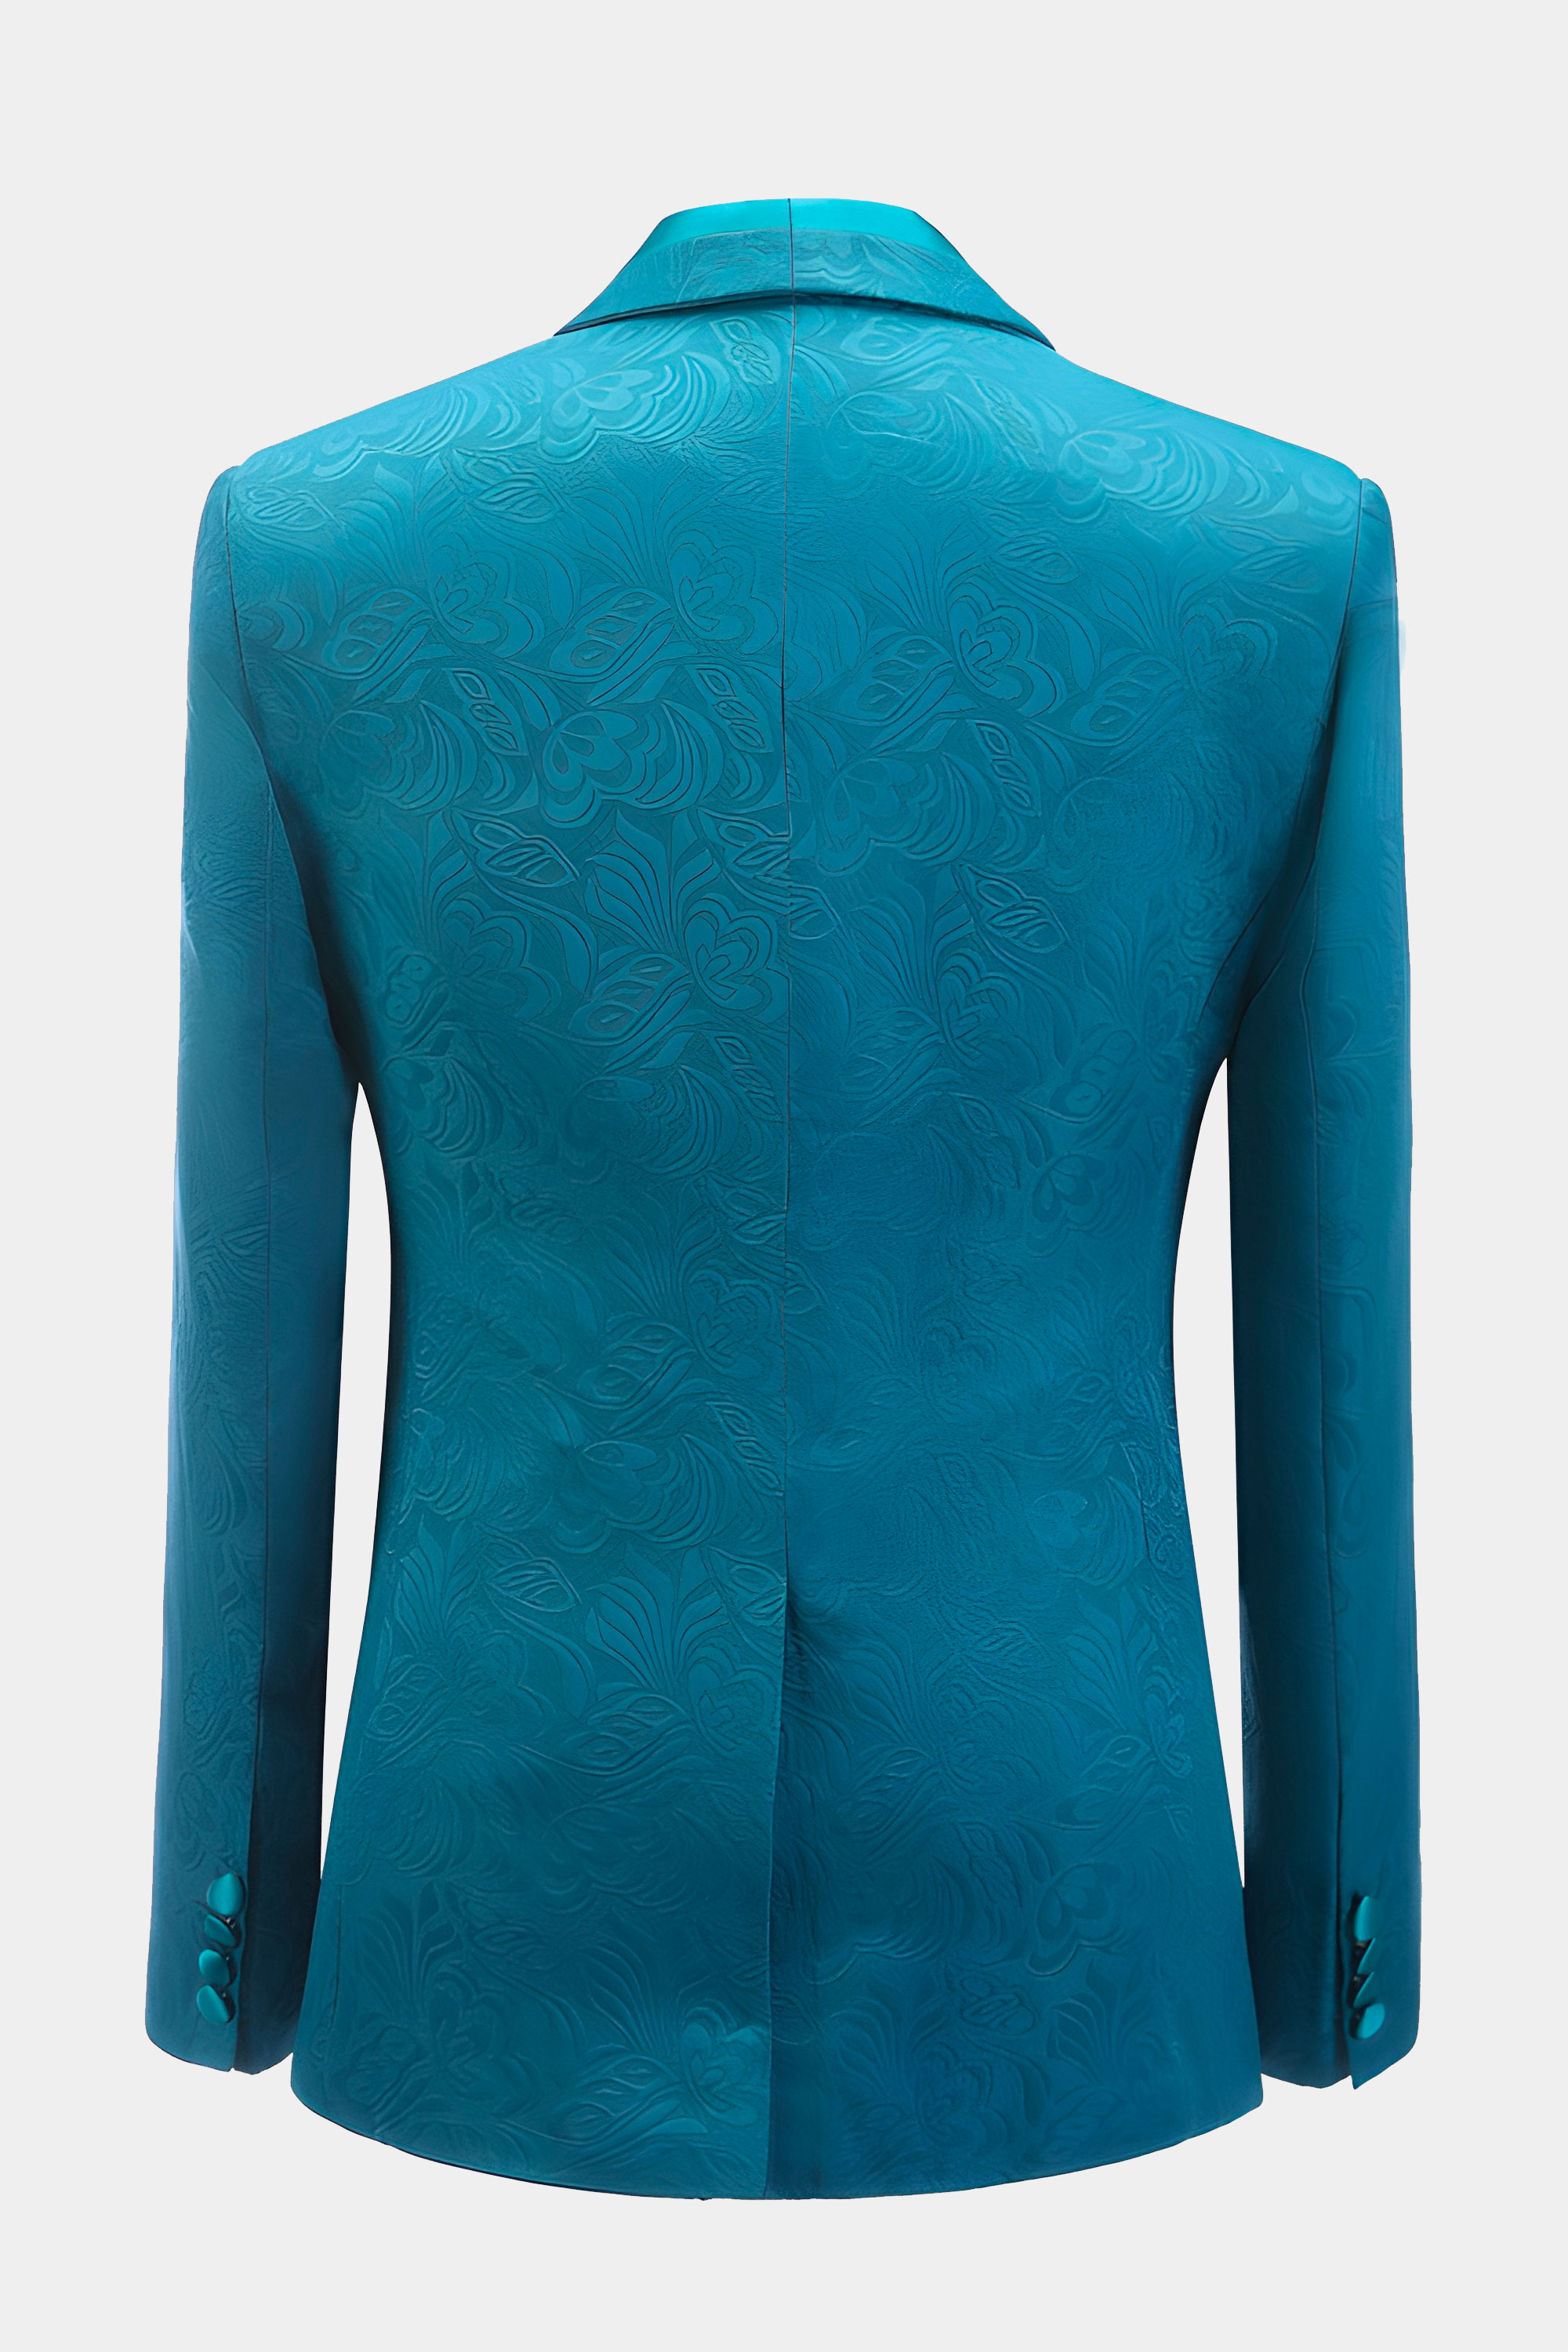 Turquoise-Blue-Tuxedo-Jacket-from-Gentlemansguru.com